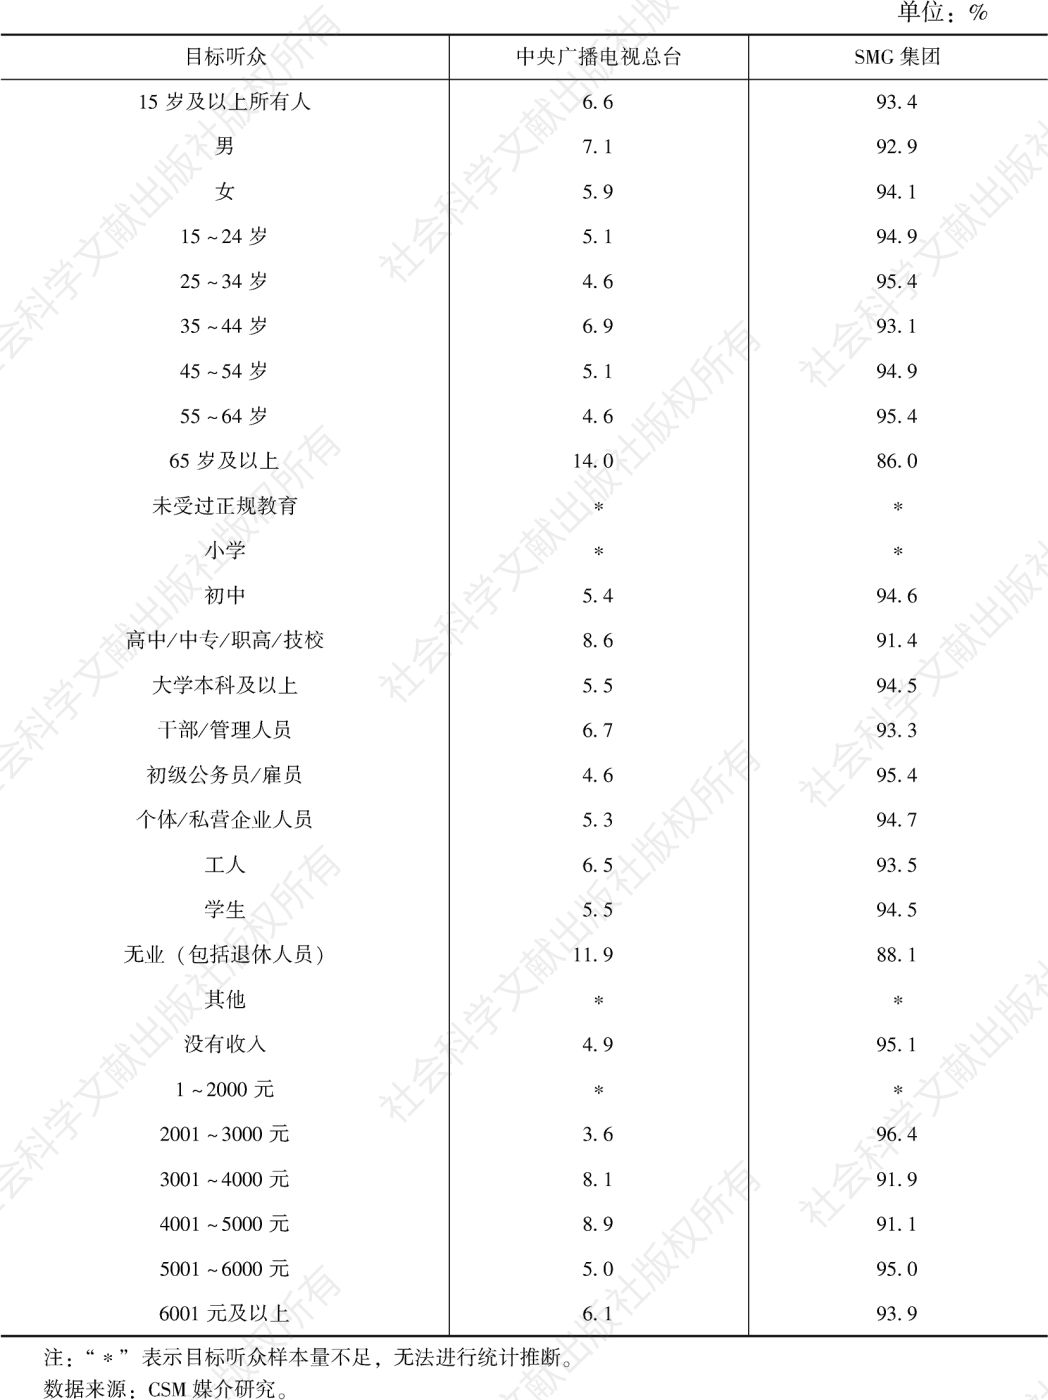 表1.10.4 2021年上海市场各类频率在不同目标听众中的市场份额